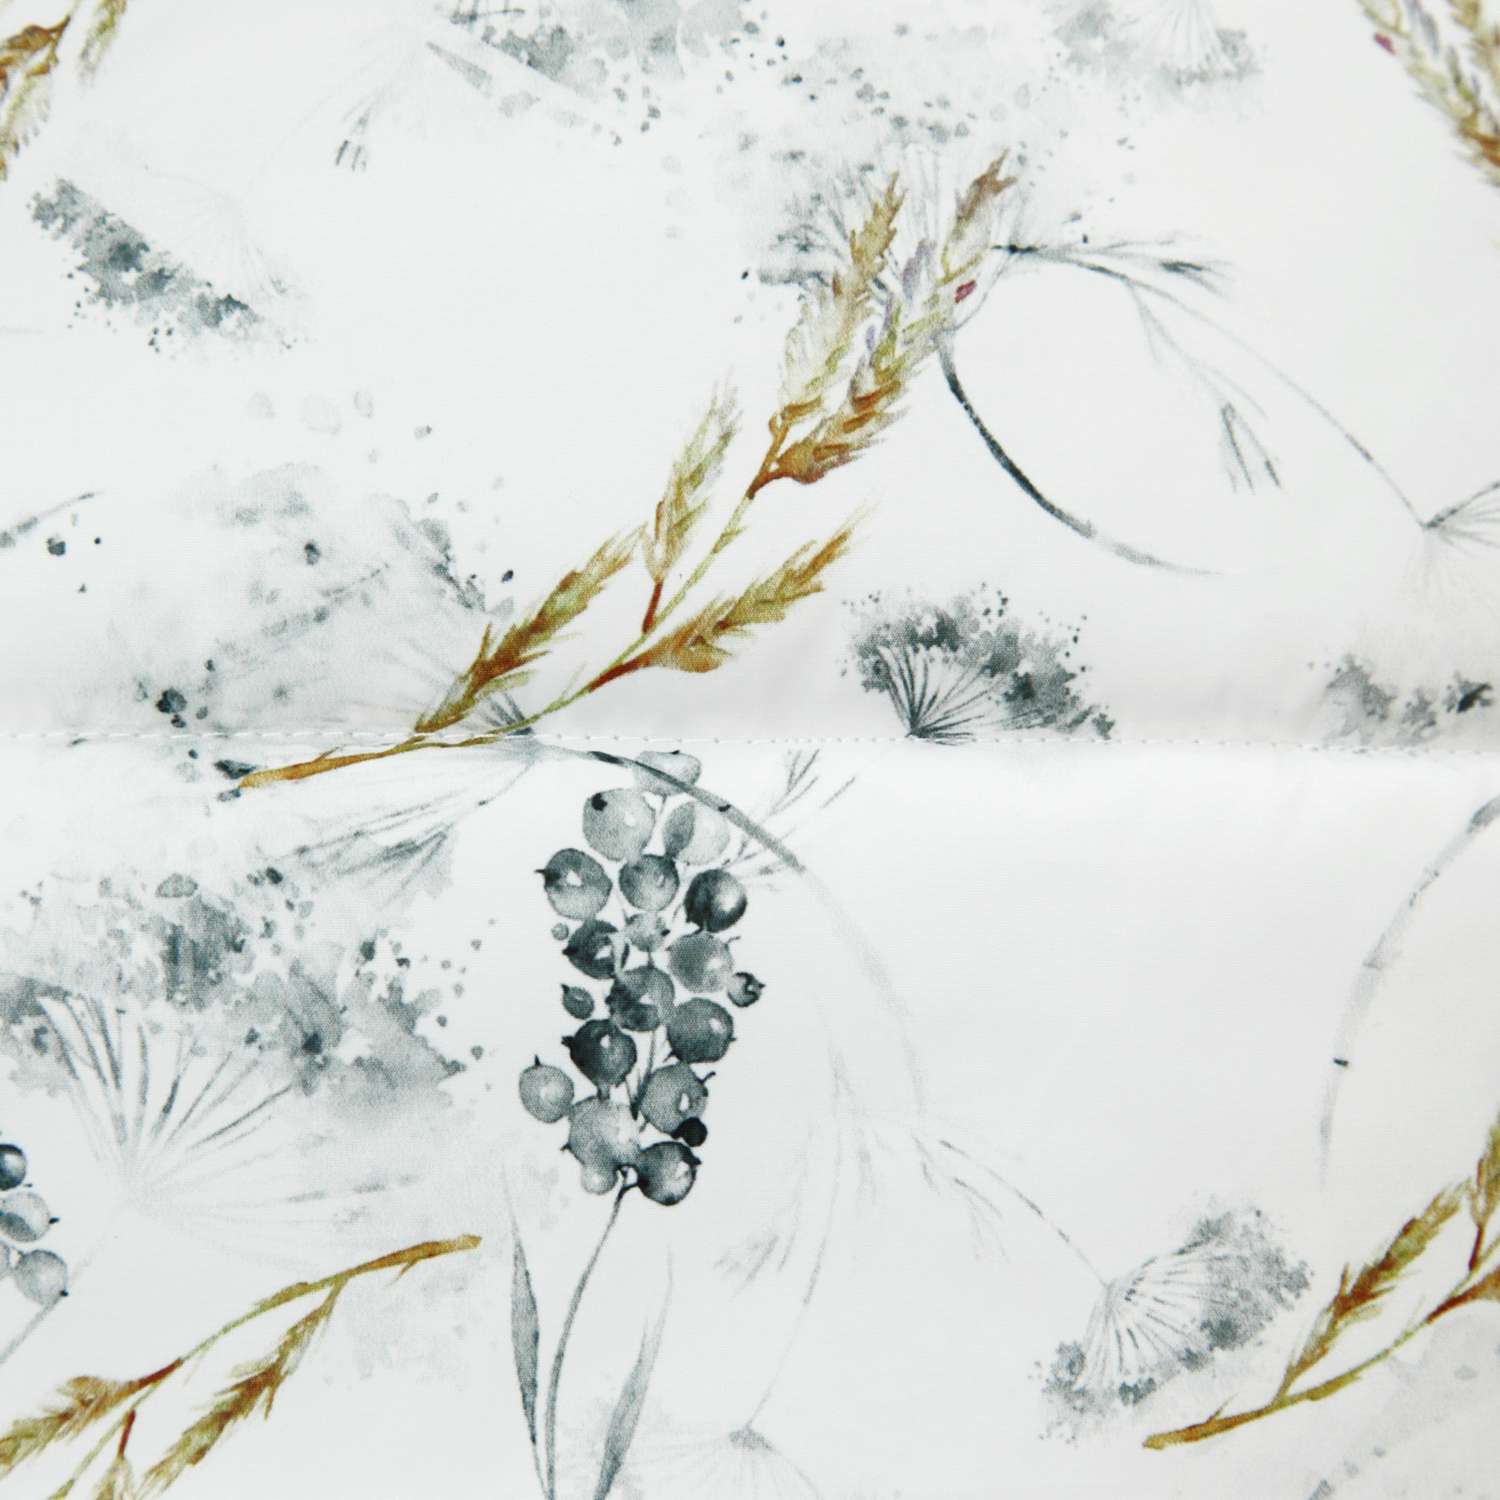 Конверт зимний AmaroBaby меховой Snowy Baby Колос белый 105 см - фото 15